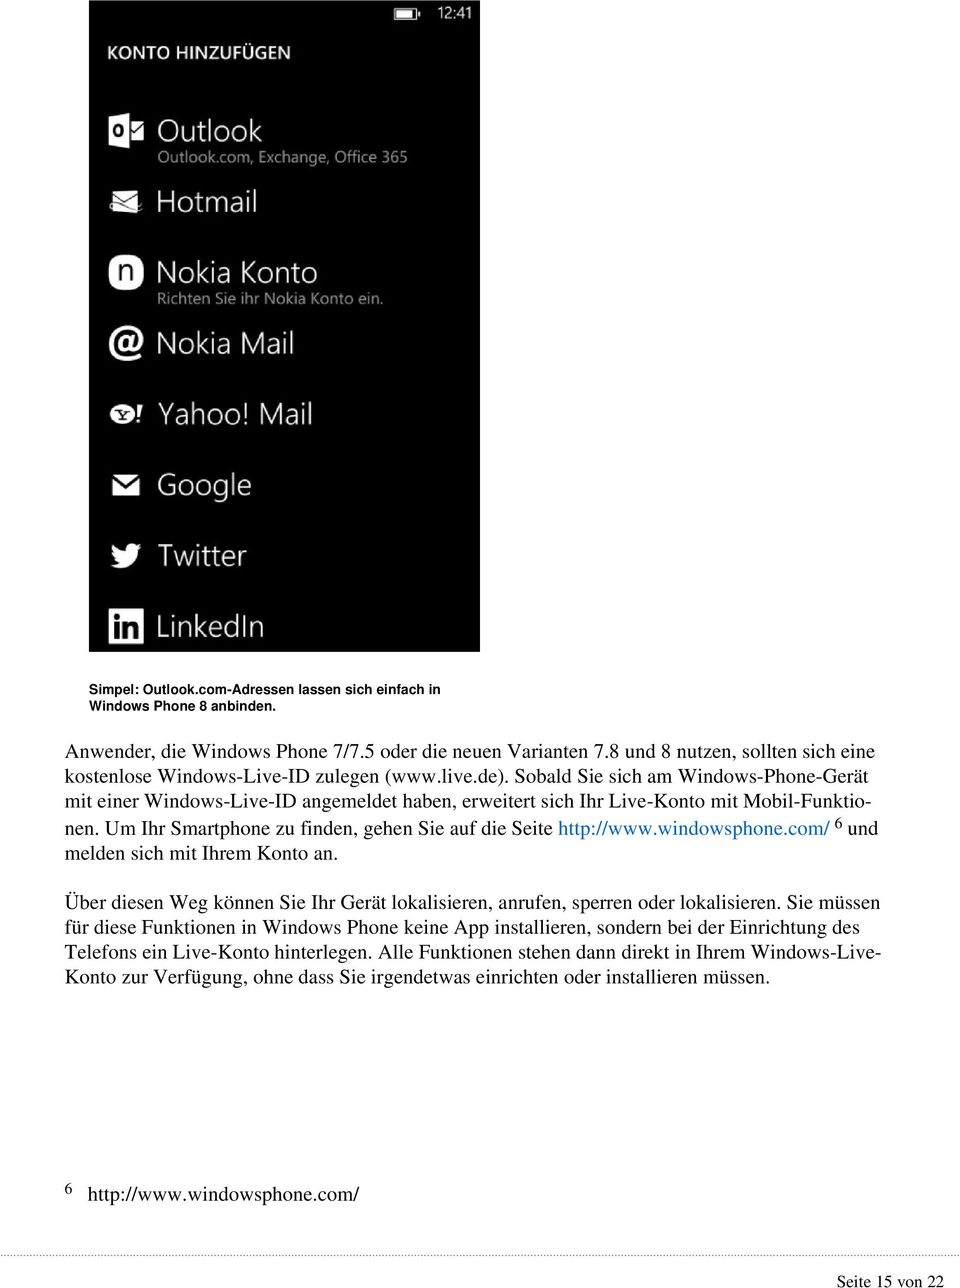 Sobald Sie sich am Windows-Phone-Gerät mit einer Windows-Live-ID angemeldet haben, erweitert sich Ihr Live-Konto mit Mobil-Funktionen. Um Ihr Smartphone zu finden, gehen Sie auf die Seite http://www.